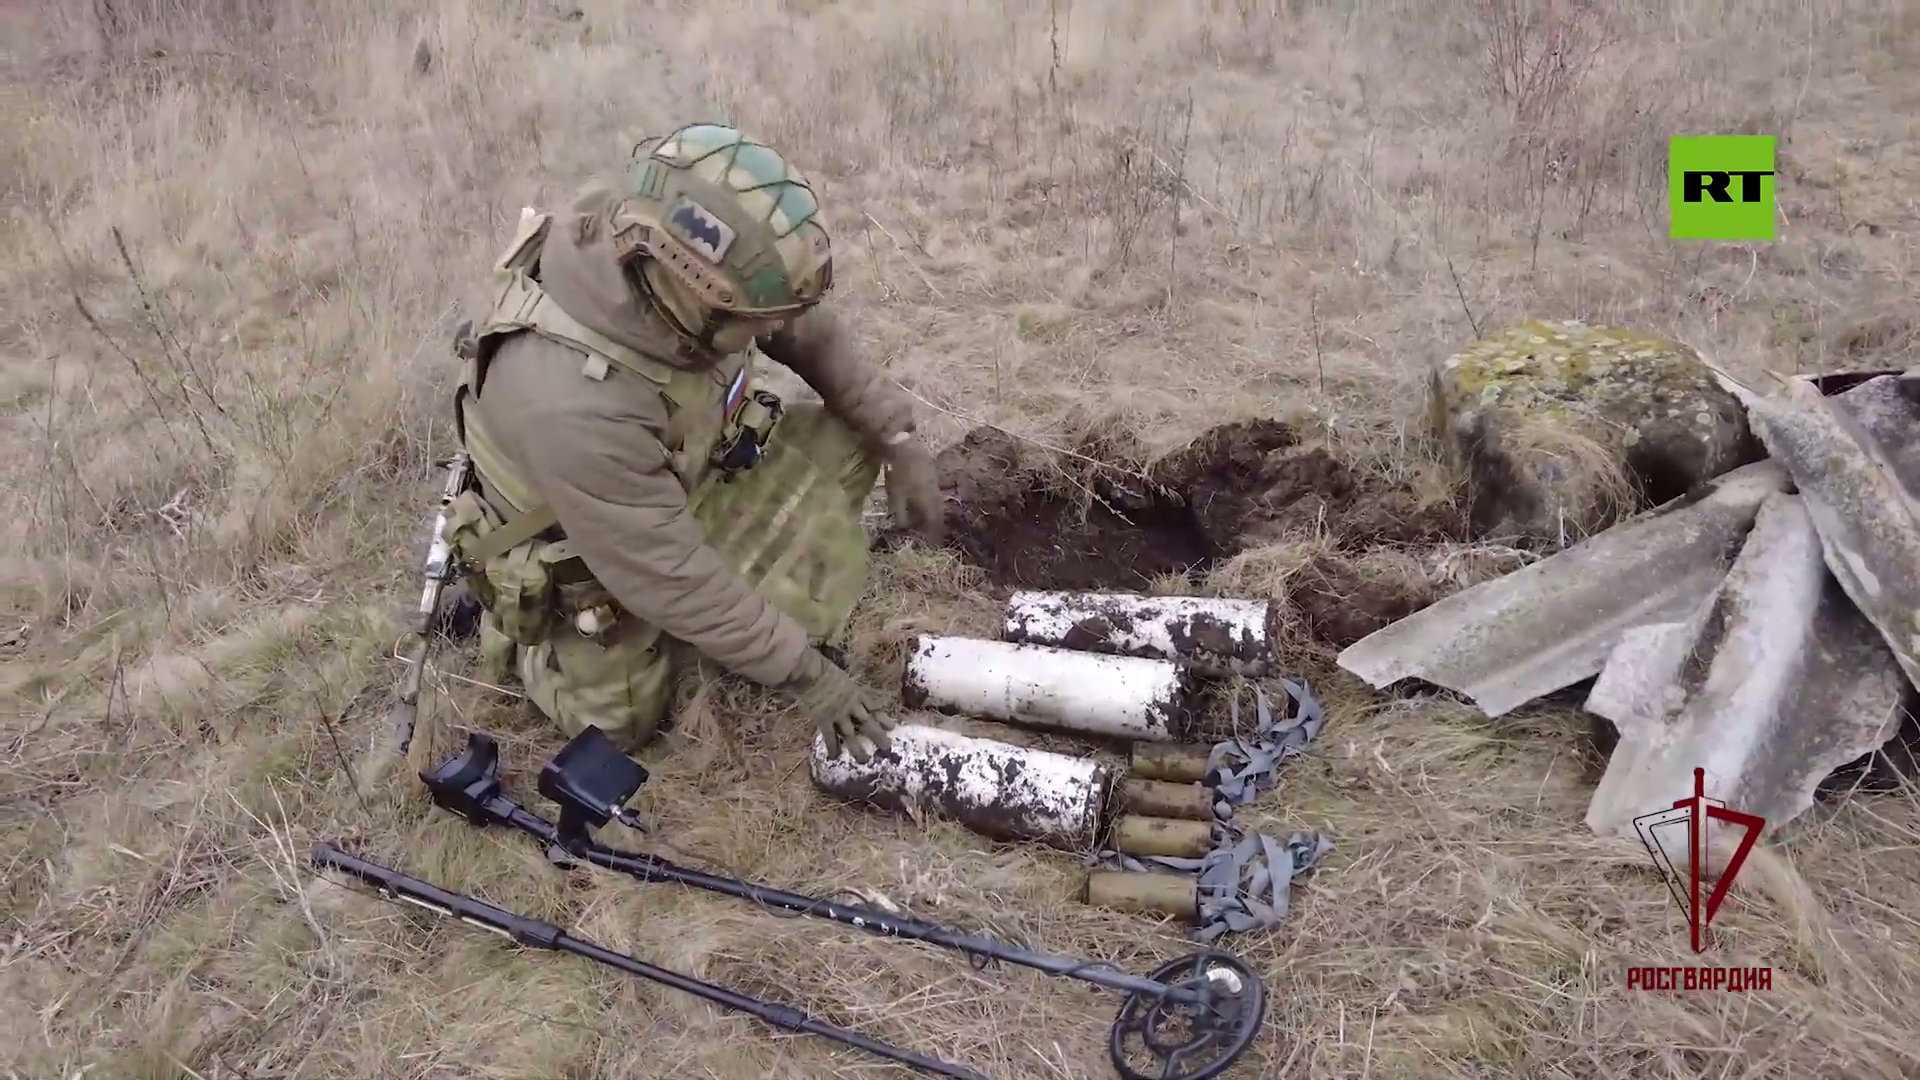 الحرس الوطني الروسي يطهر لوغانسك من بقايا الذخائر الأوكرانية غير المنفجرة (فيديو)